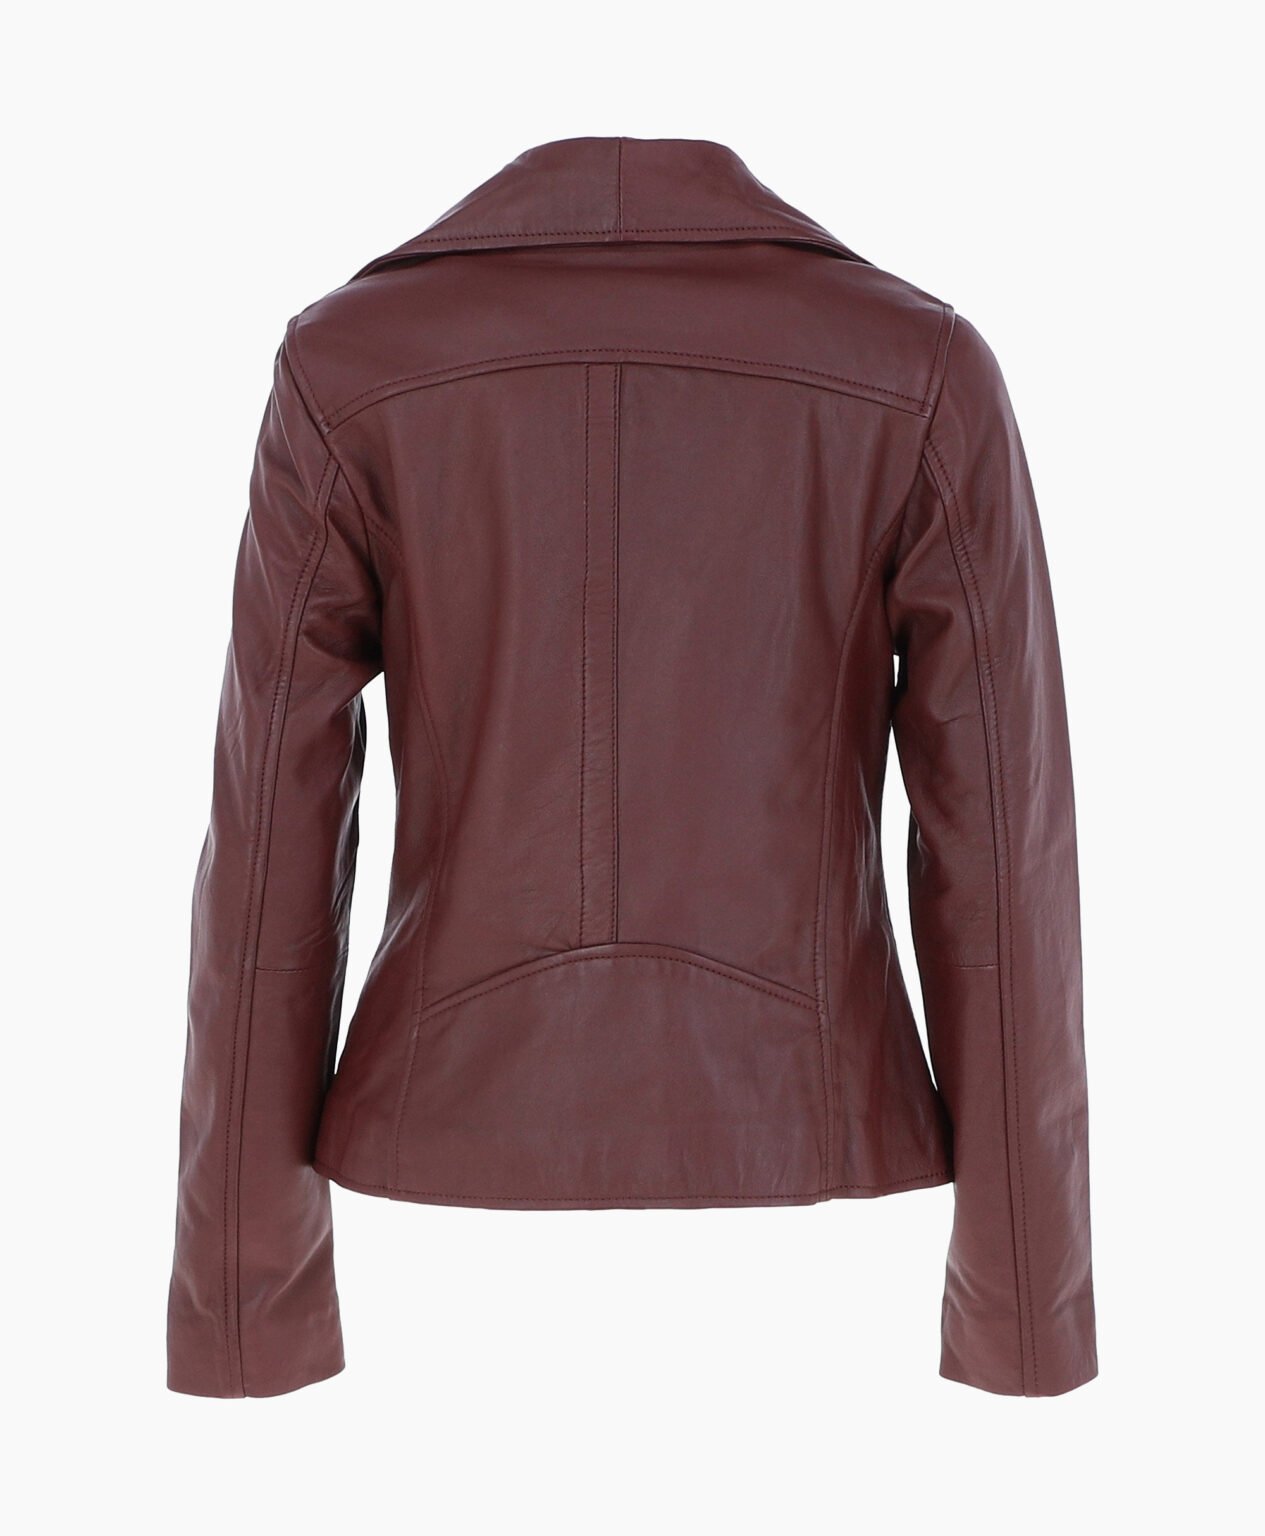 vogue-jacket-leather-jacket-fashion-collar-oxblood-shelby-image202